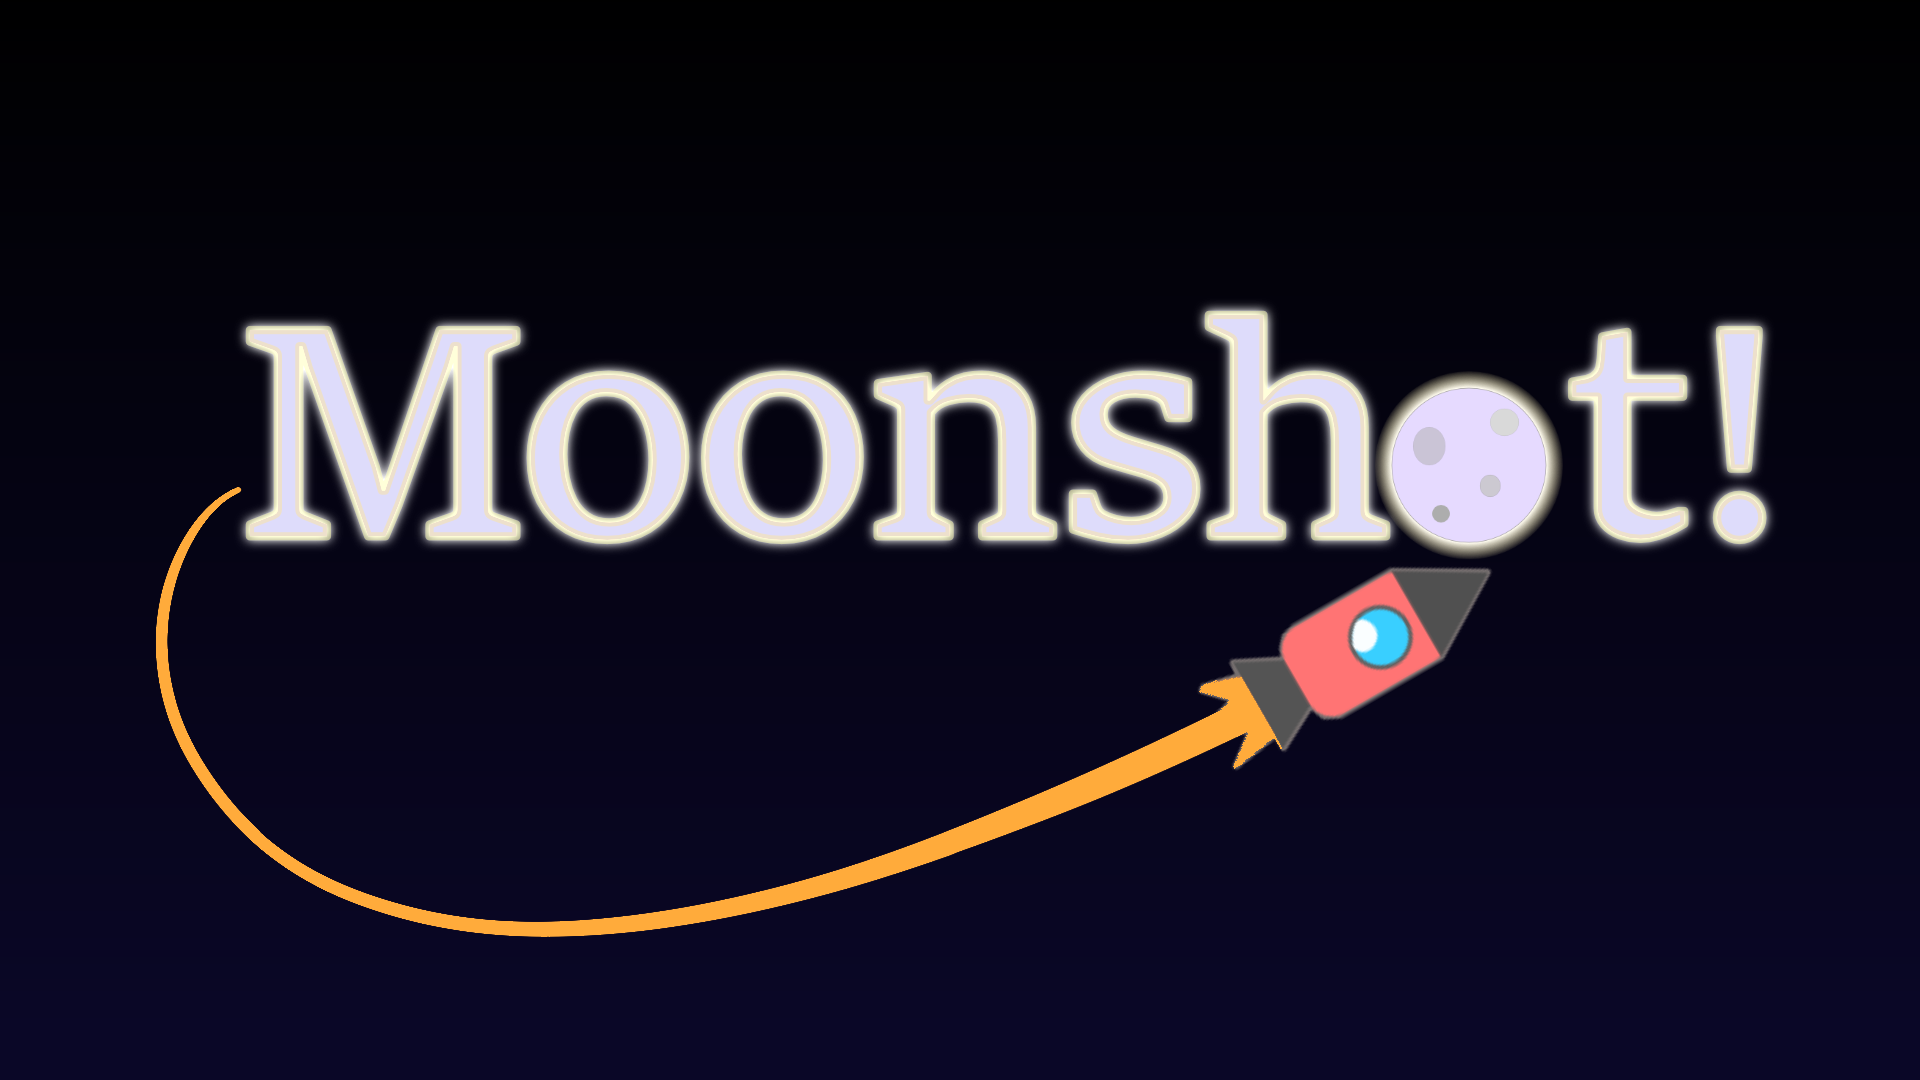 Moonshot!